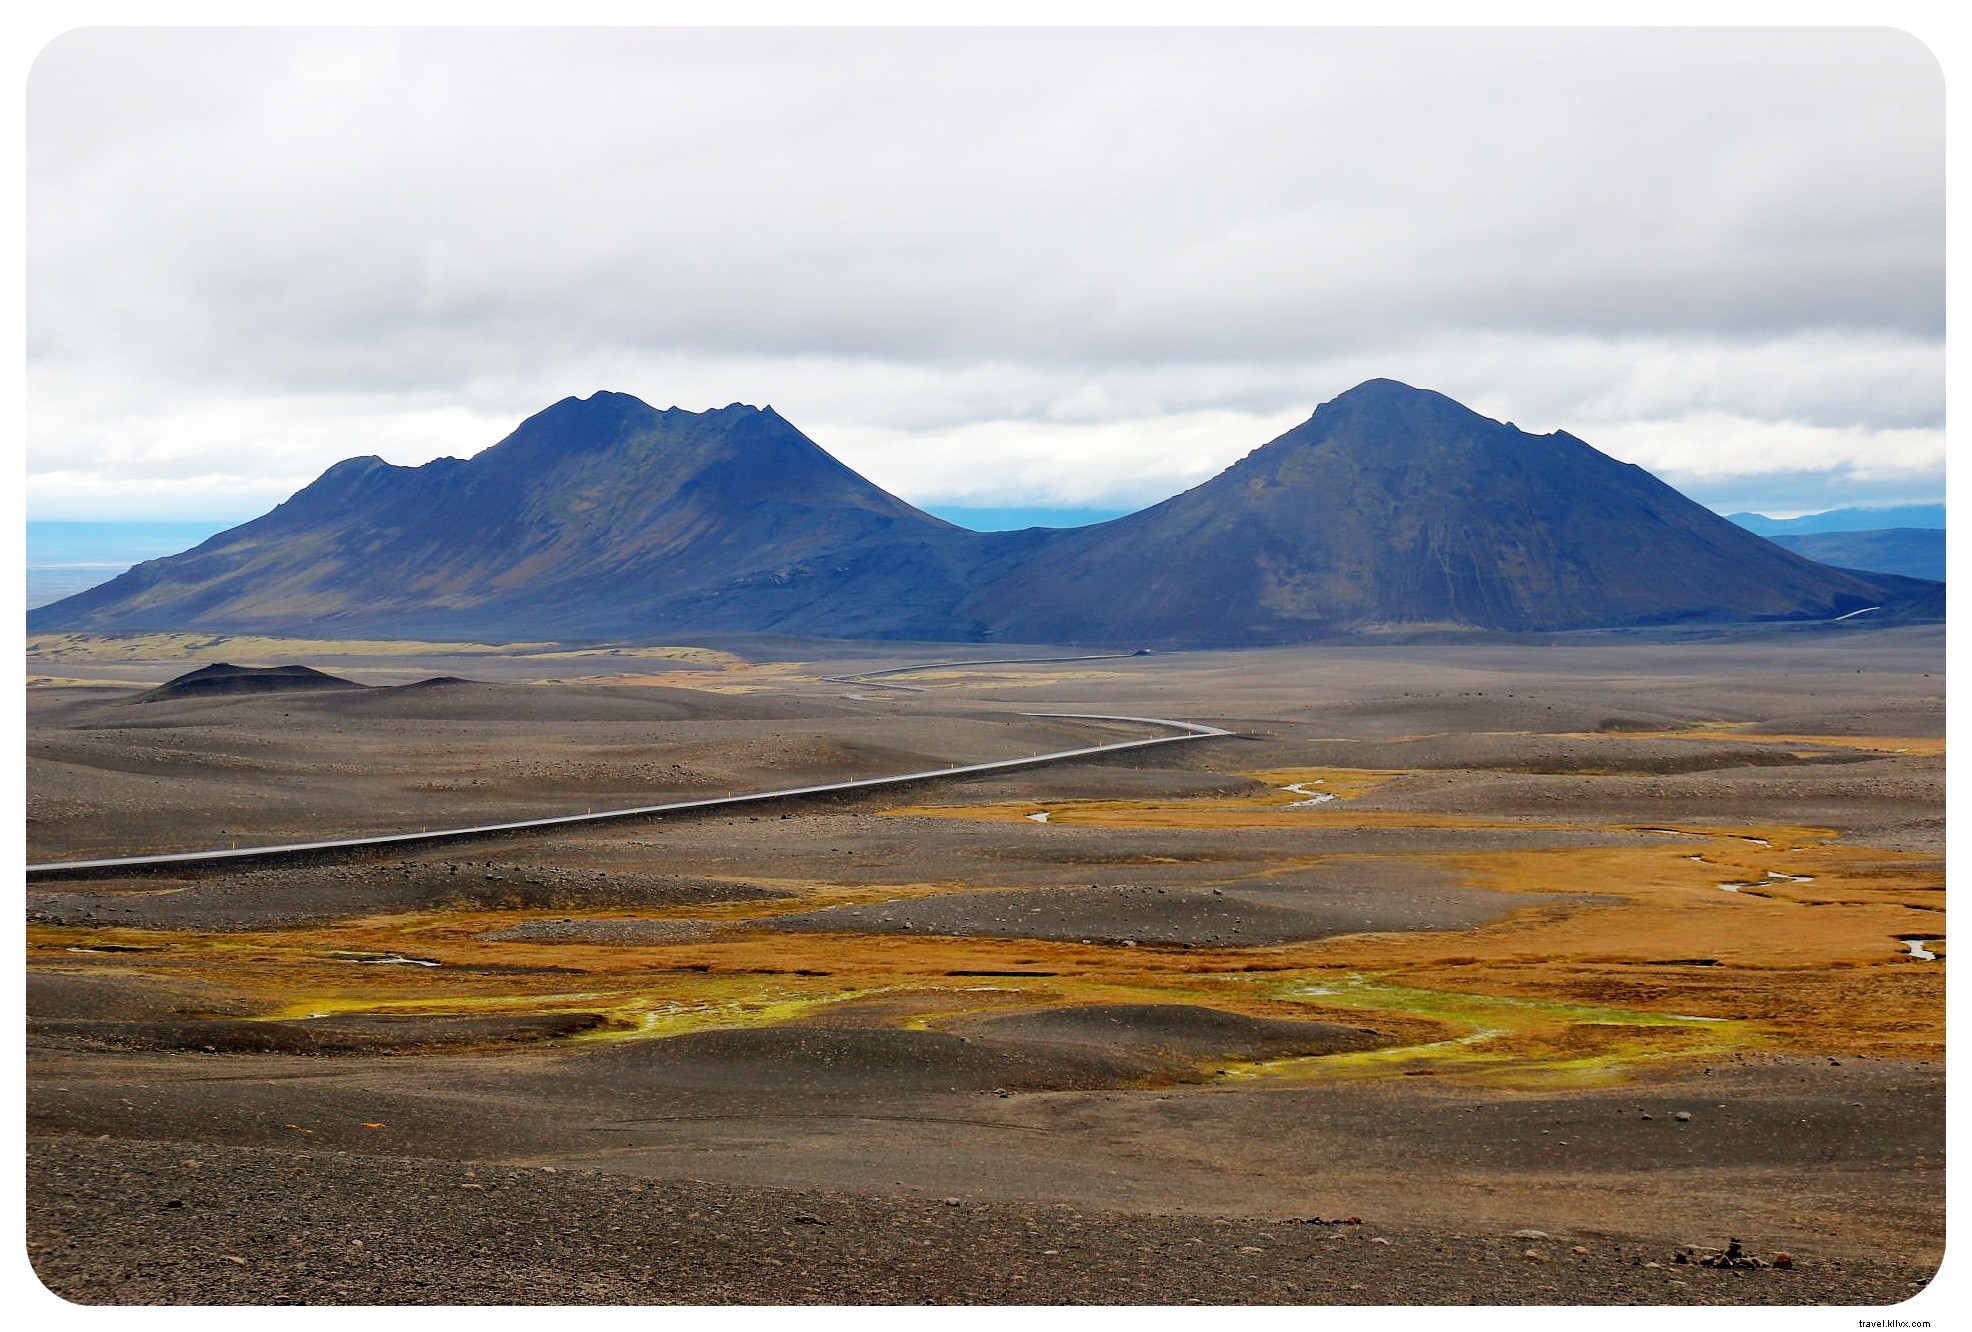 ロードトリップがアイスランドを見る最良の方法である3つの理由